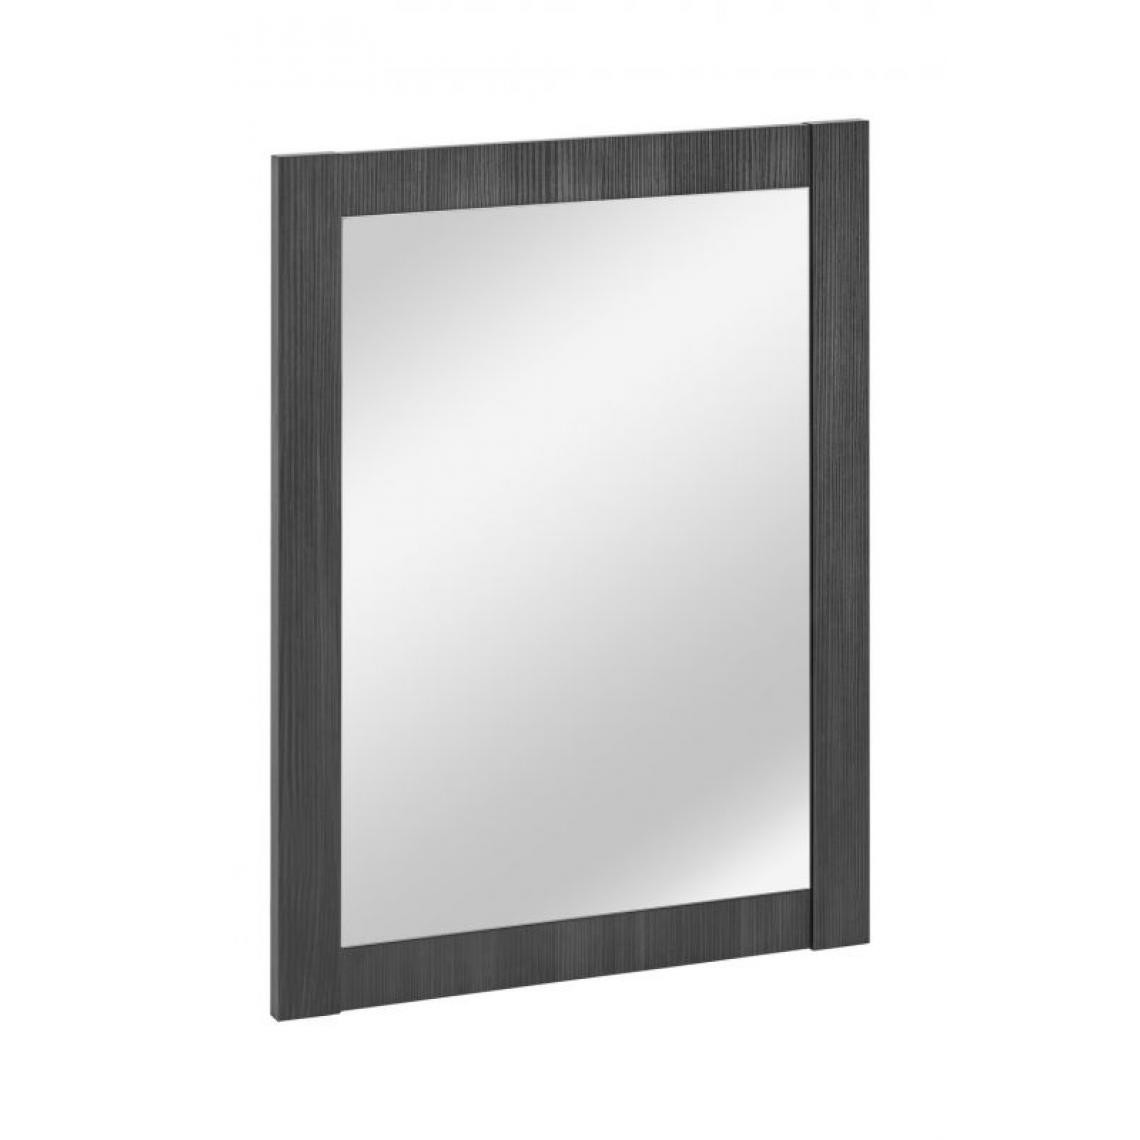 Classic - CLASSIC GRAPHITE 840 miroir 60cm / miroir 60cm - Miroir de salle de bain